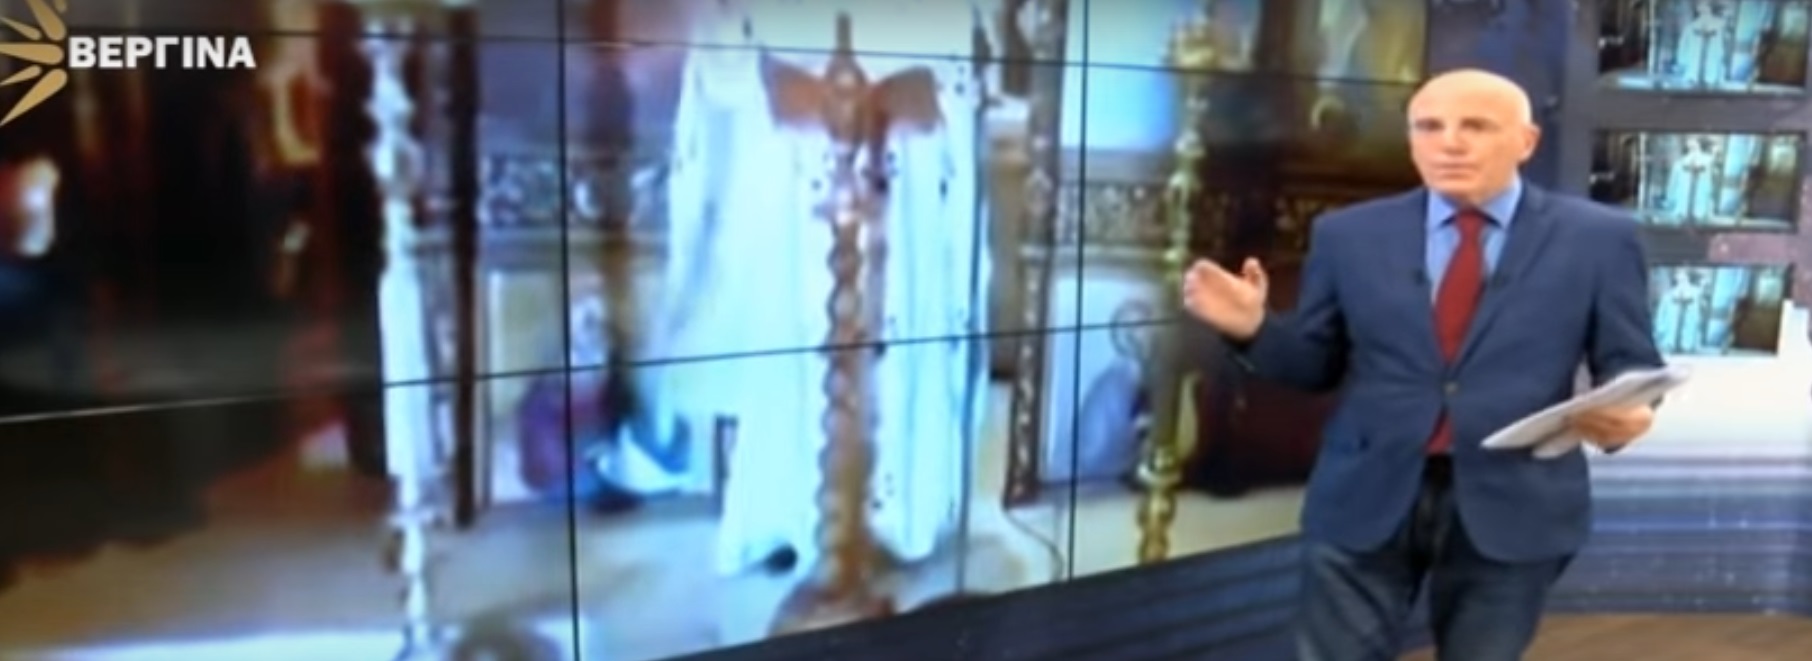 Αφιέρωμα στα ελληνοτουρκικά από τον Στέργιο Καλόγηρο στην εκπομπή «Σχολιάζοντας την επικαιρότητα» του «Βεργίνα TV»